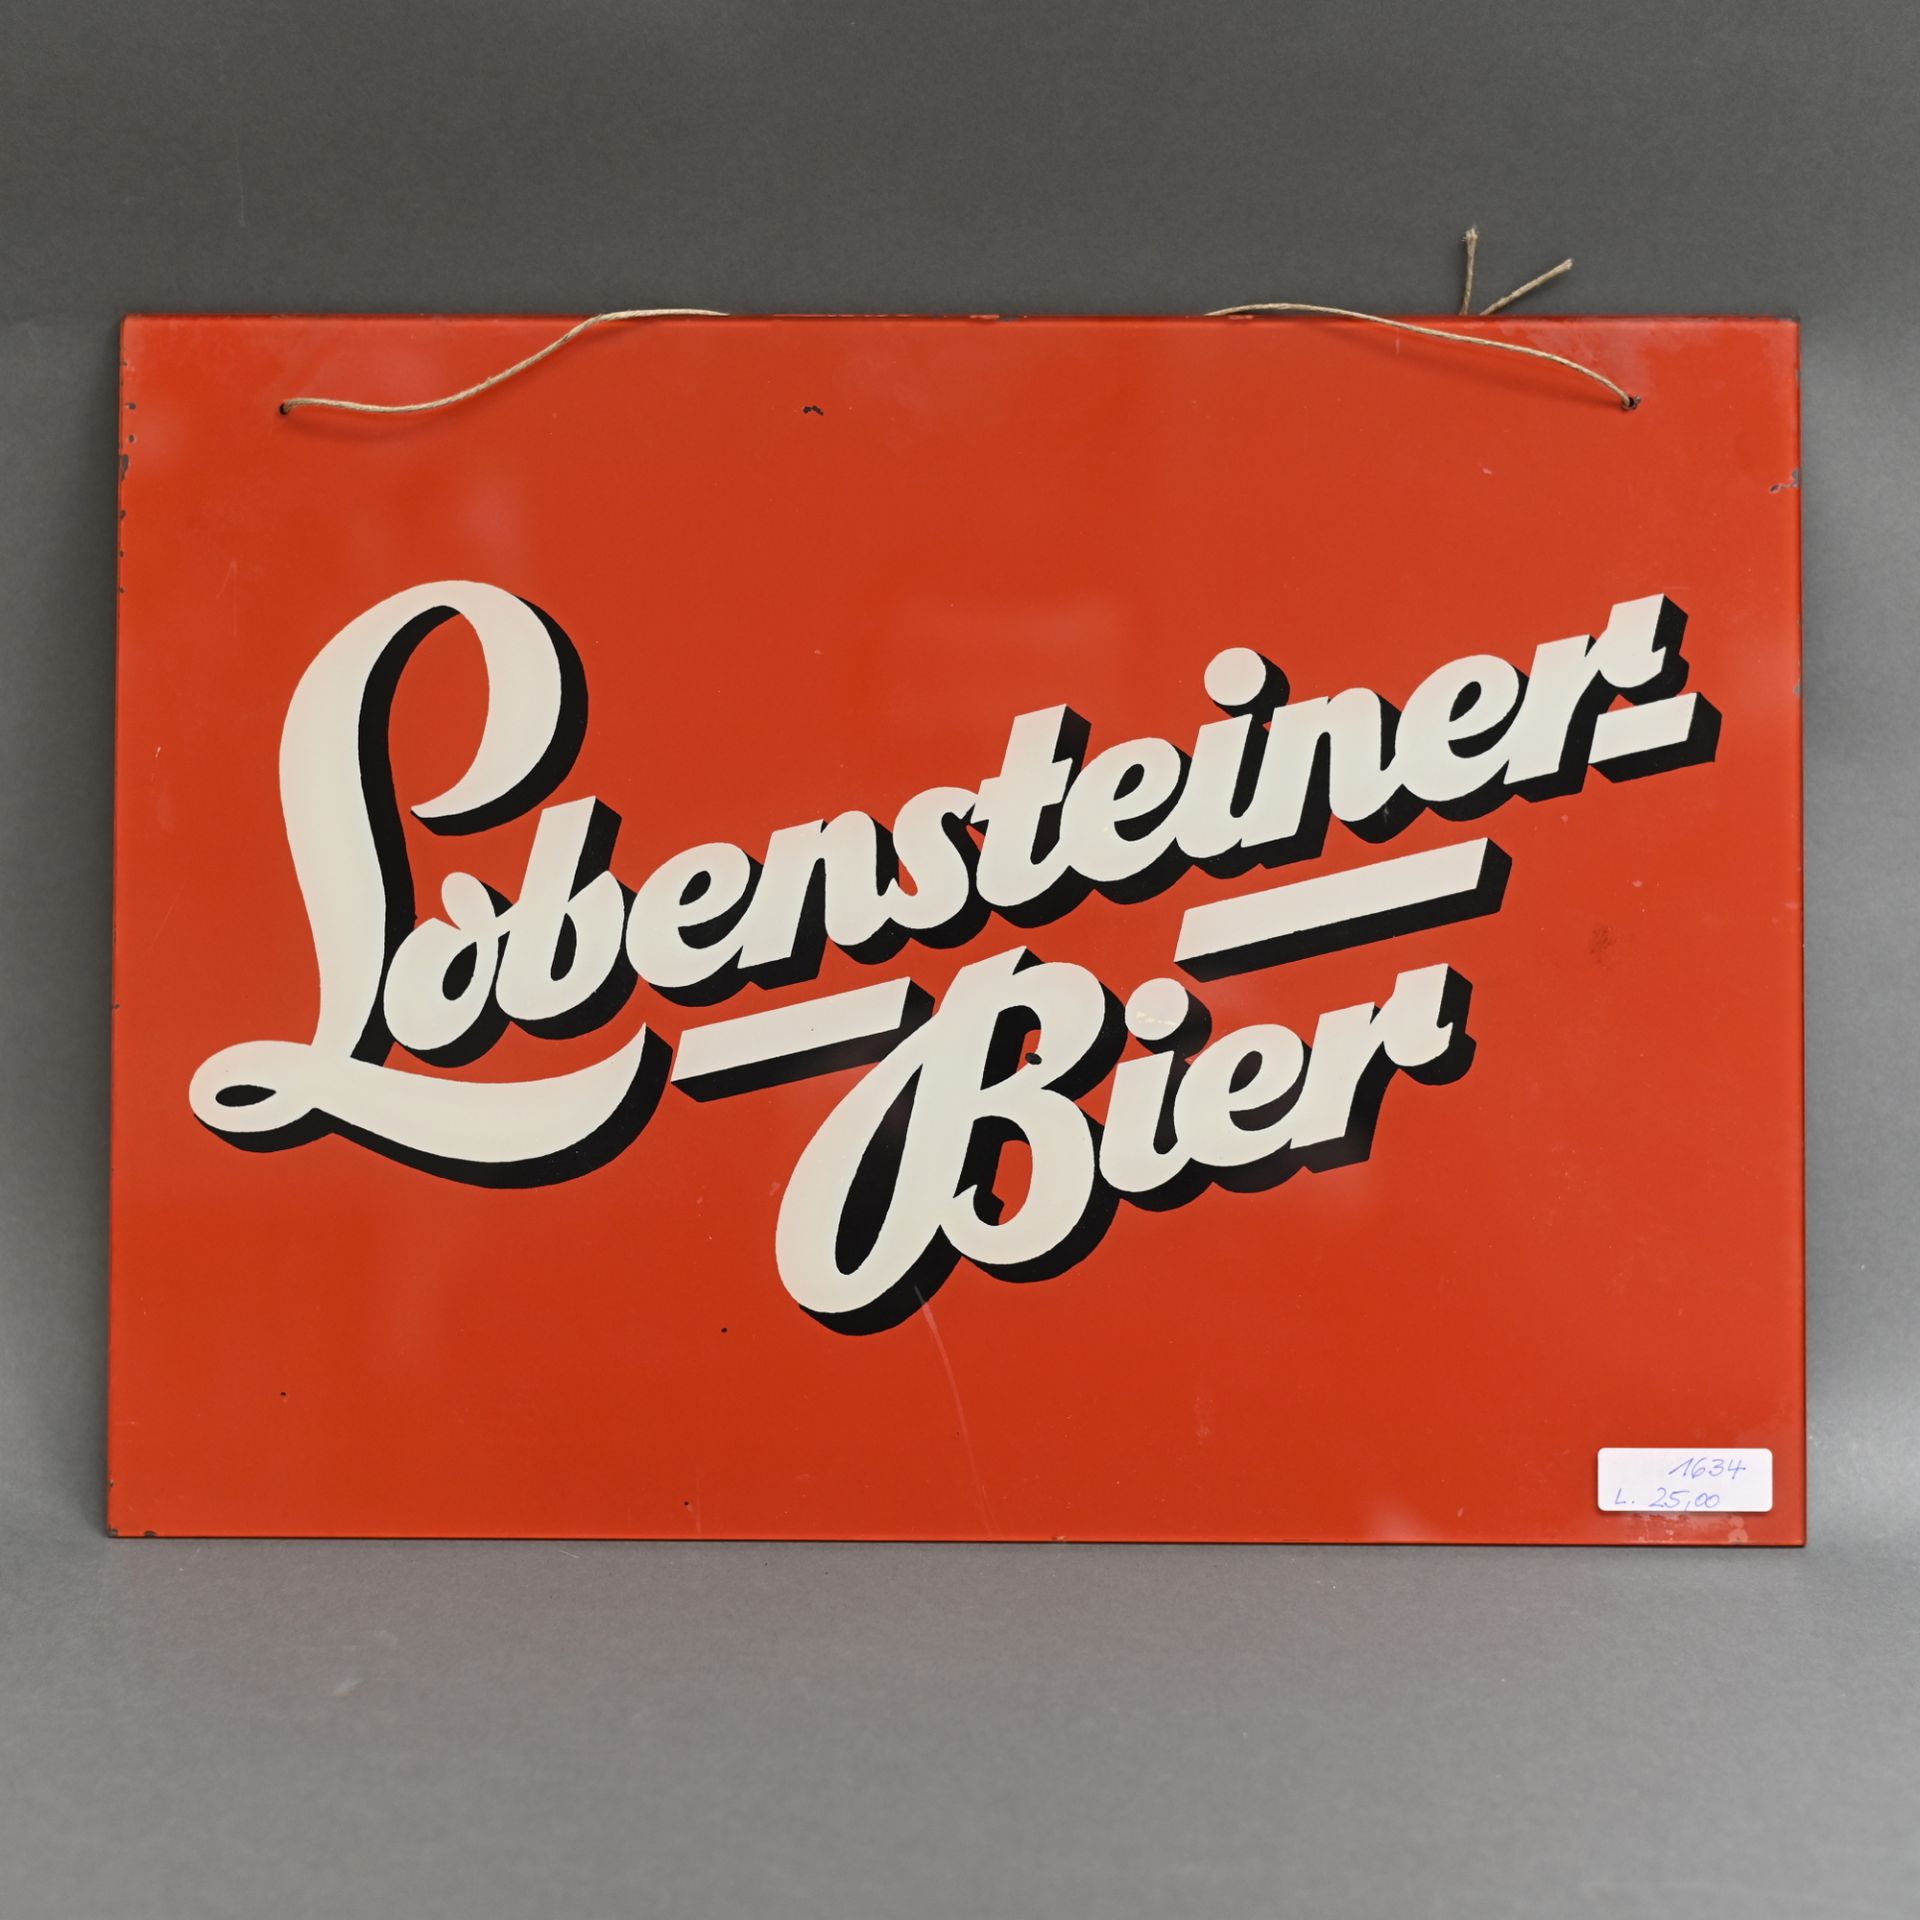 Glasschild "Lobensteiner Bier", guter gebrauchter Zustand, 40 x 29 cm